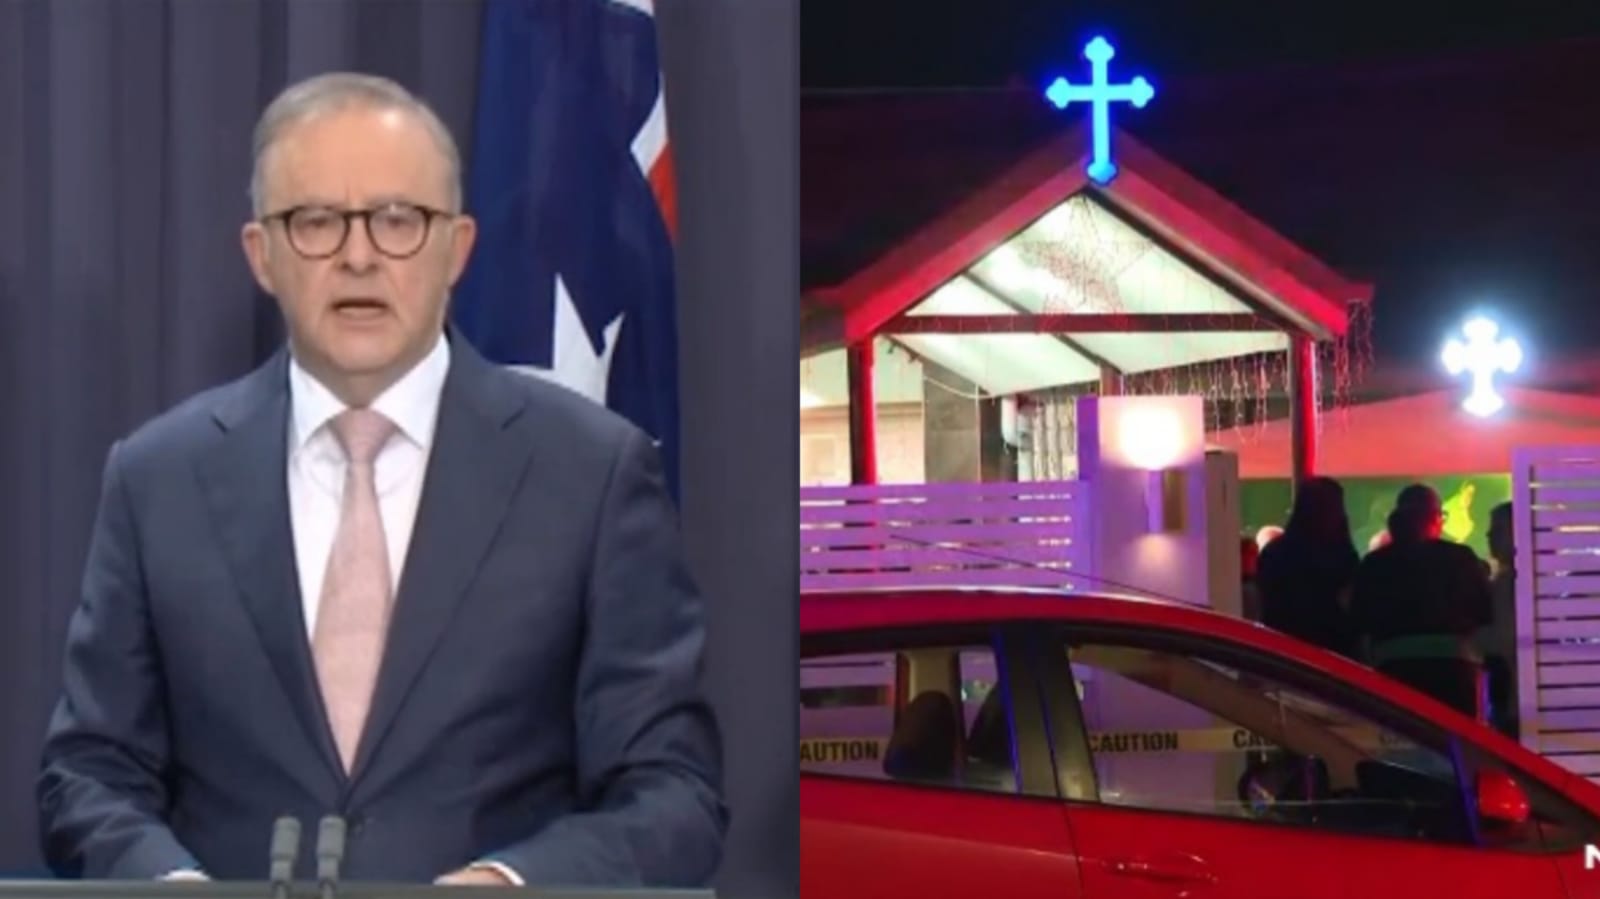 Governo da Austrália afirma que esfaqueamento em igreja foi “ataque terrorista”